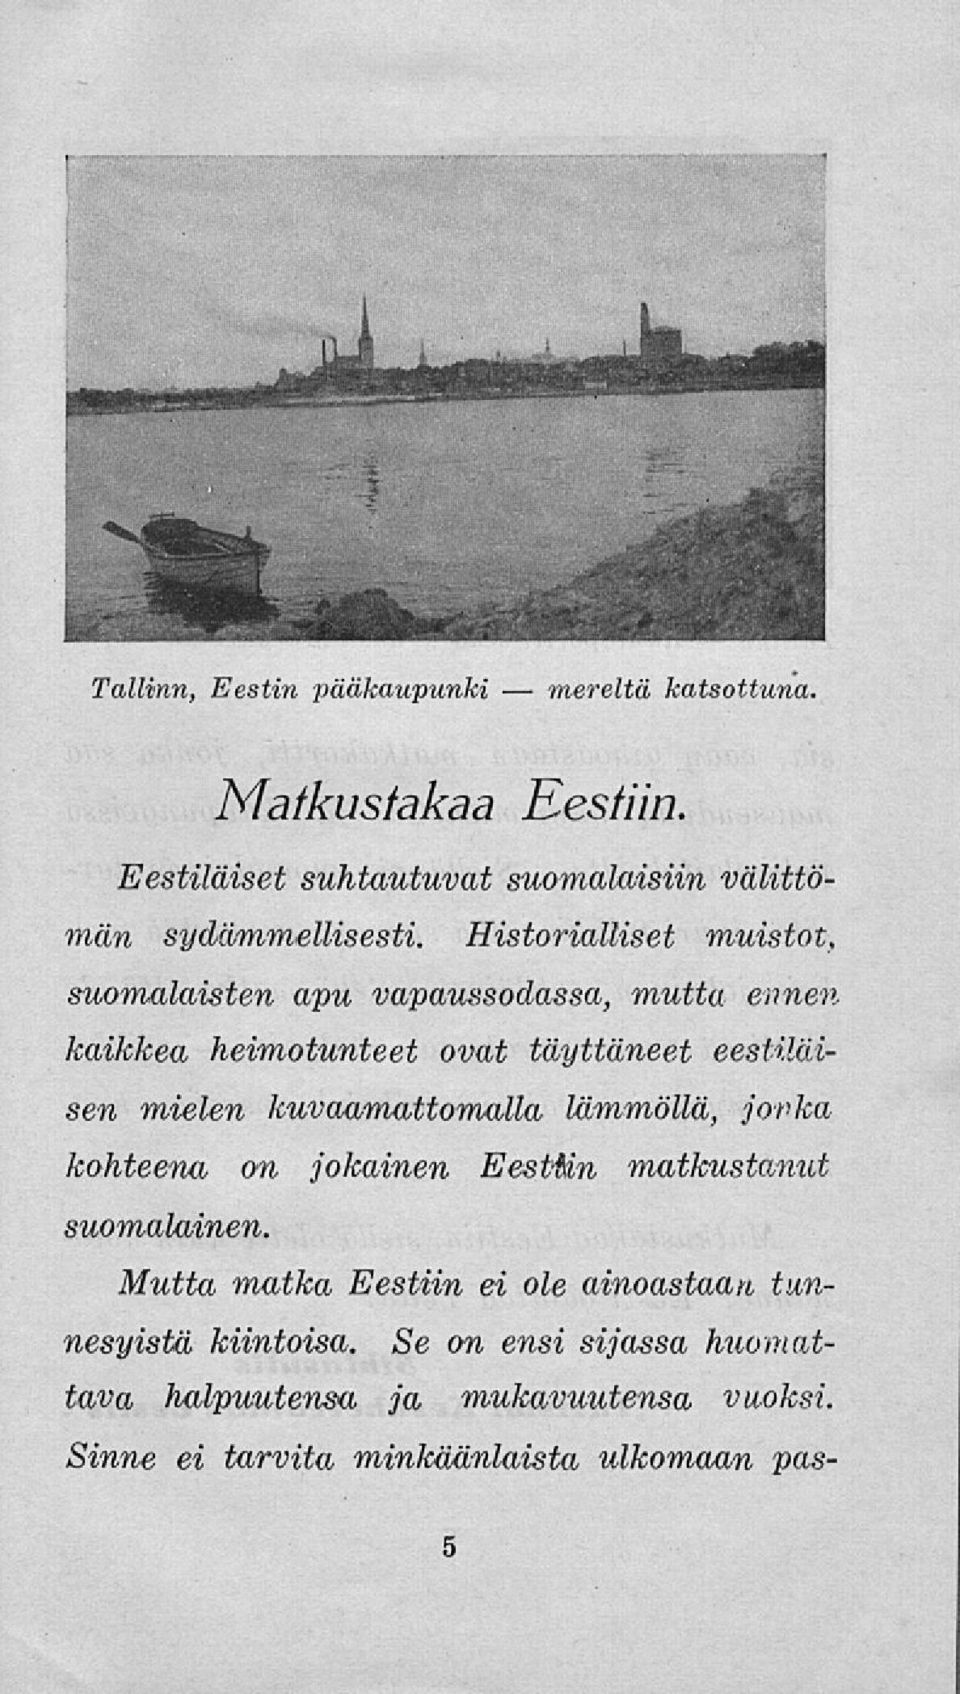 Historialliset muistot, suomalaisten apu vapaussodassa, mutta ennenkaikkea heimotunteet ovat täyttäneet eestiläisen mielen